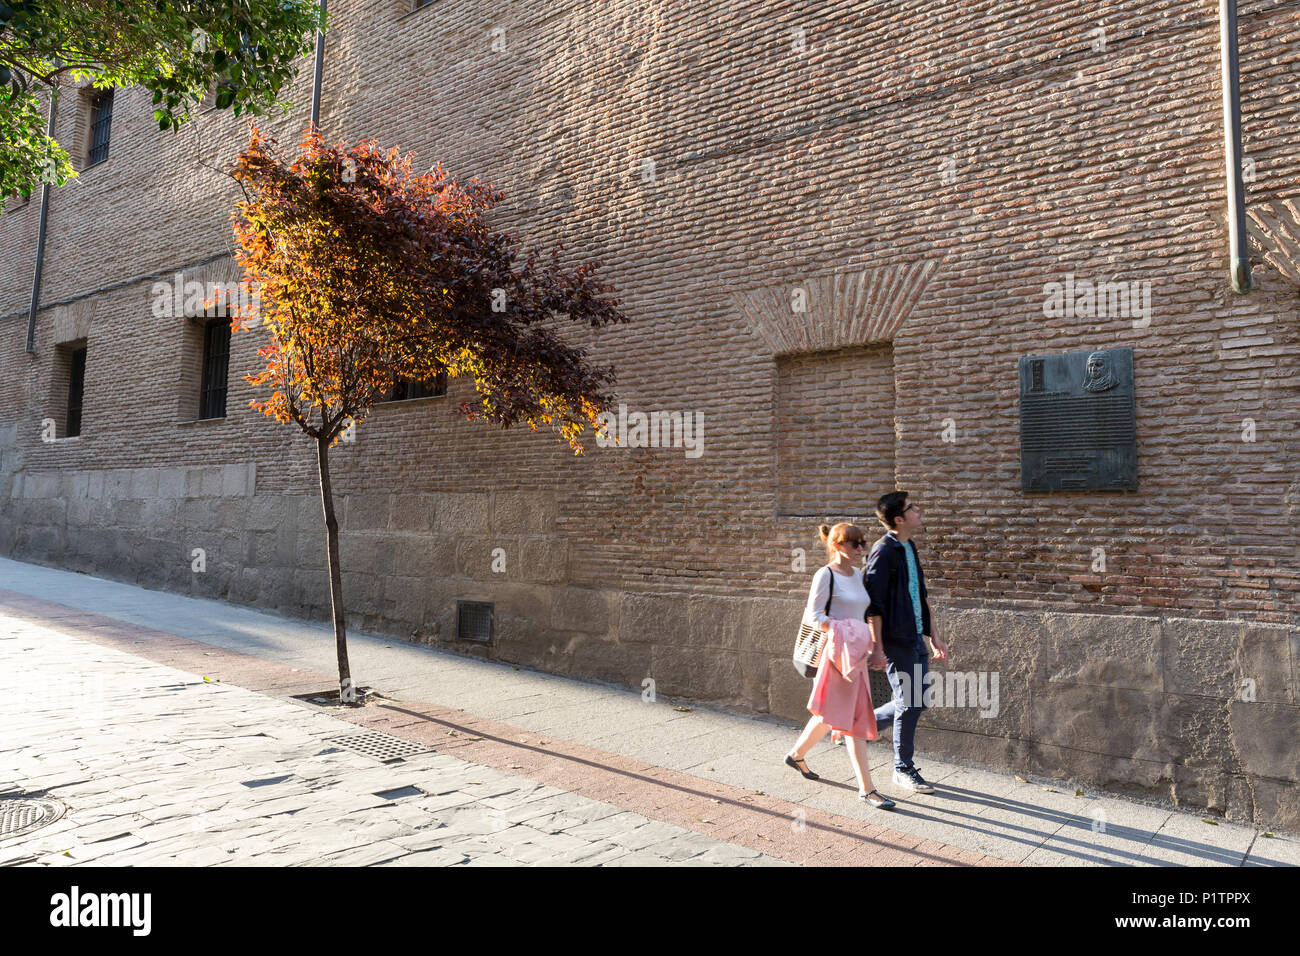 Madrid, Espagne : un jeune couple se promène le long de la Calle de las Huertas, dans le Barrio de las Letras. Ils passent une plaque commémorant dors Marcela de San Félix Banque D'Images